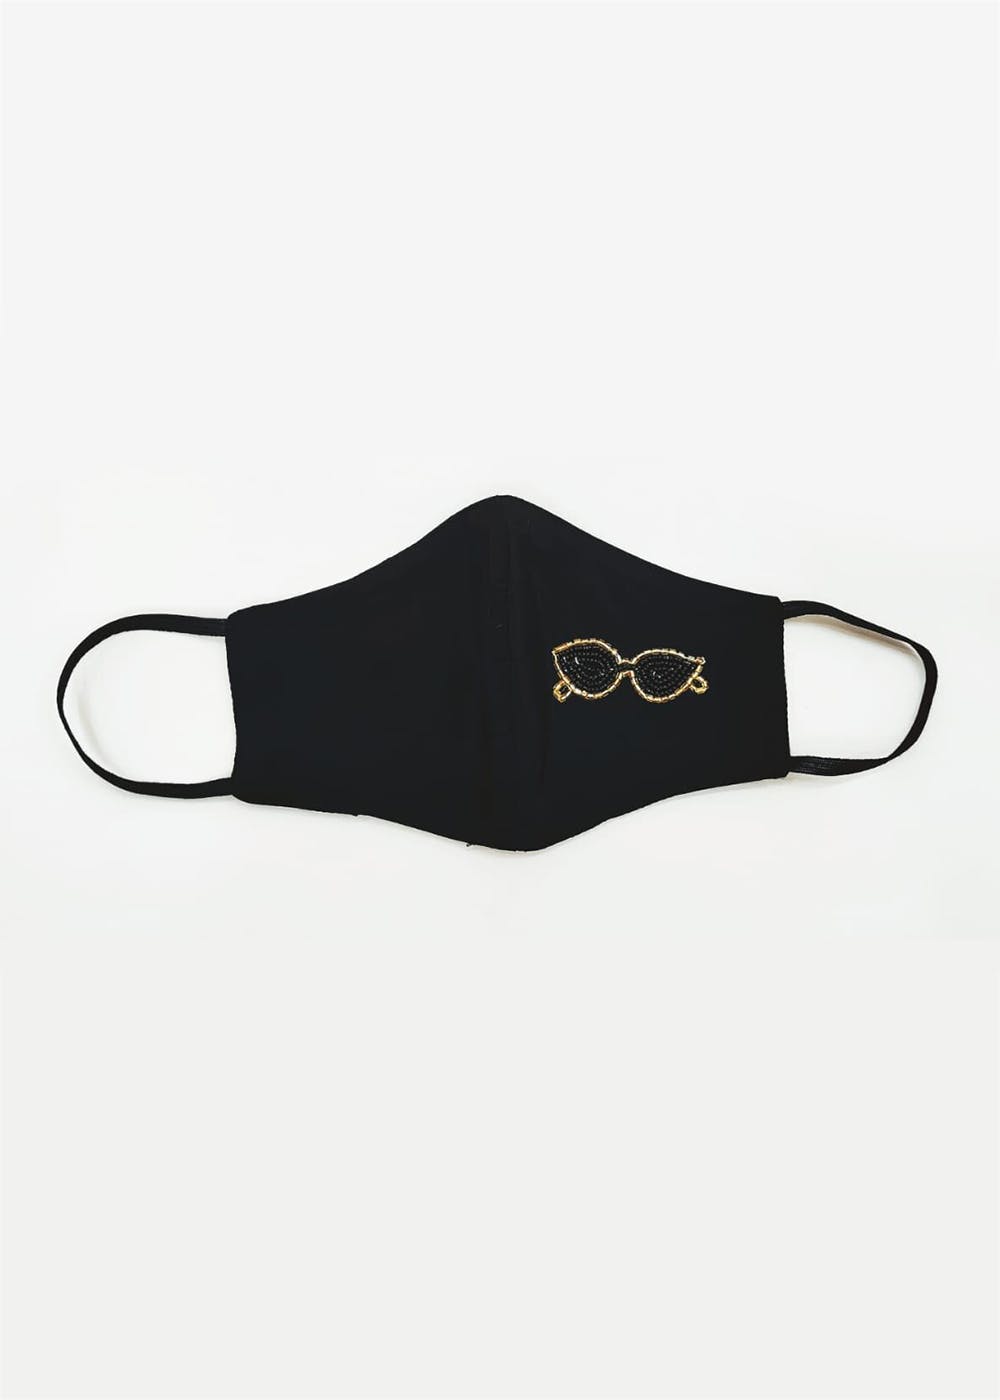 Black Embellished Spectacles Mask